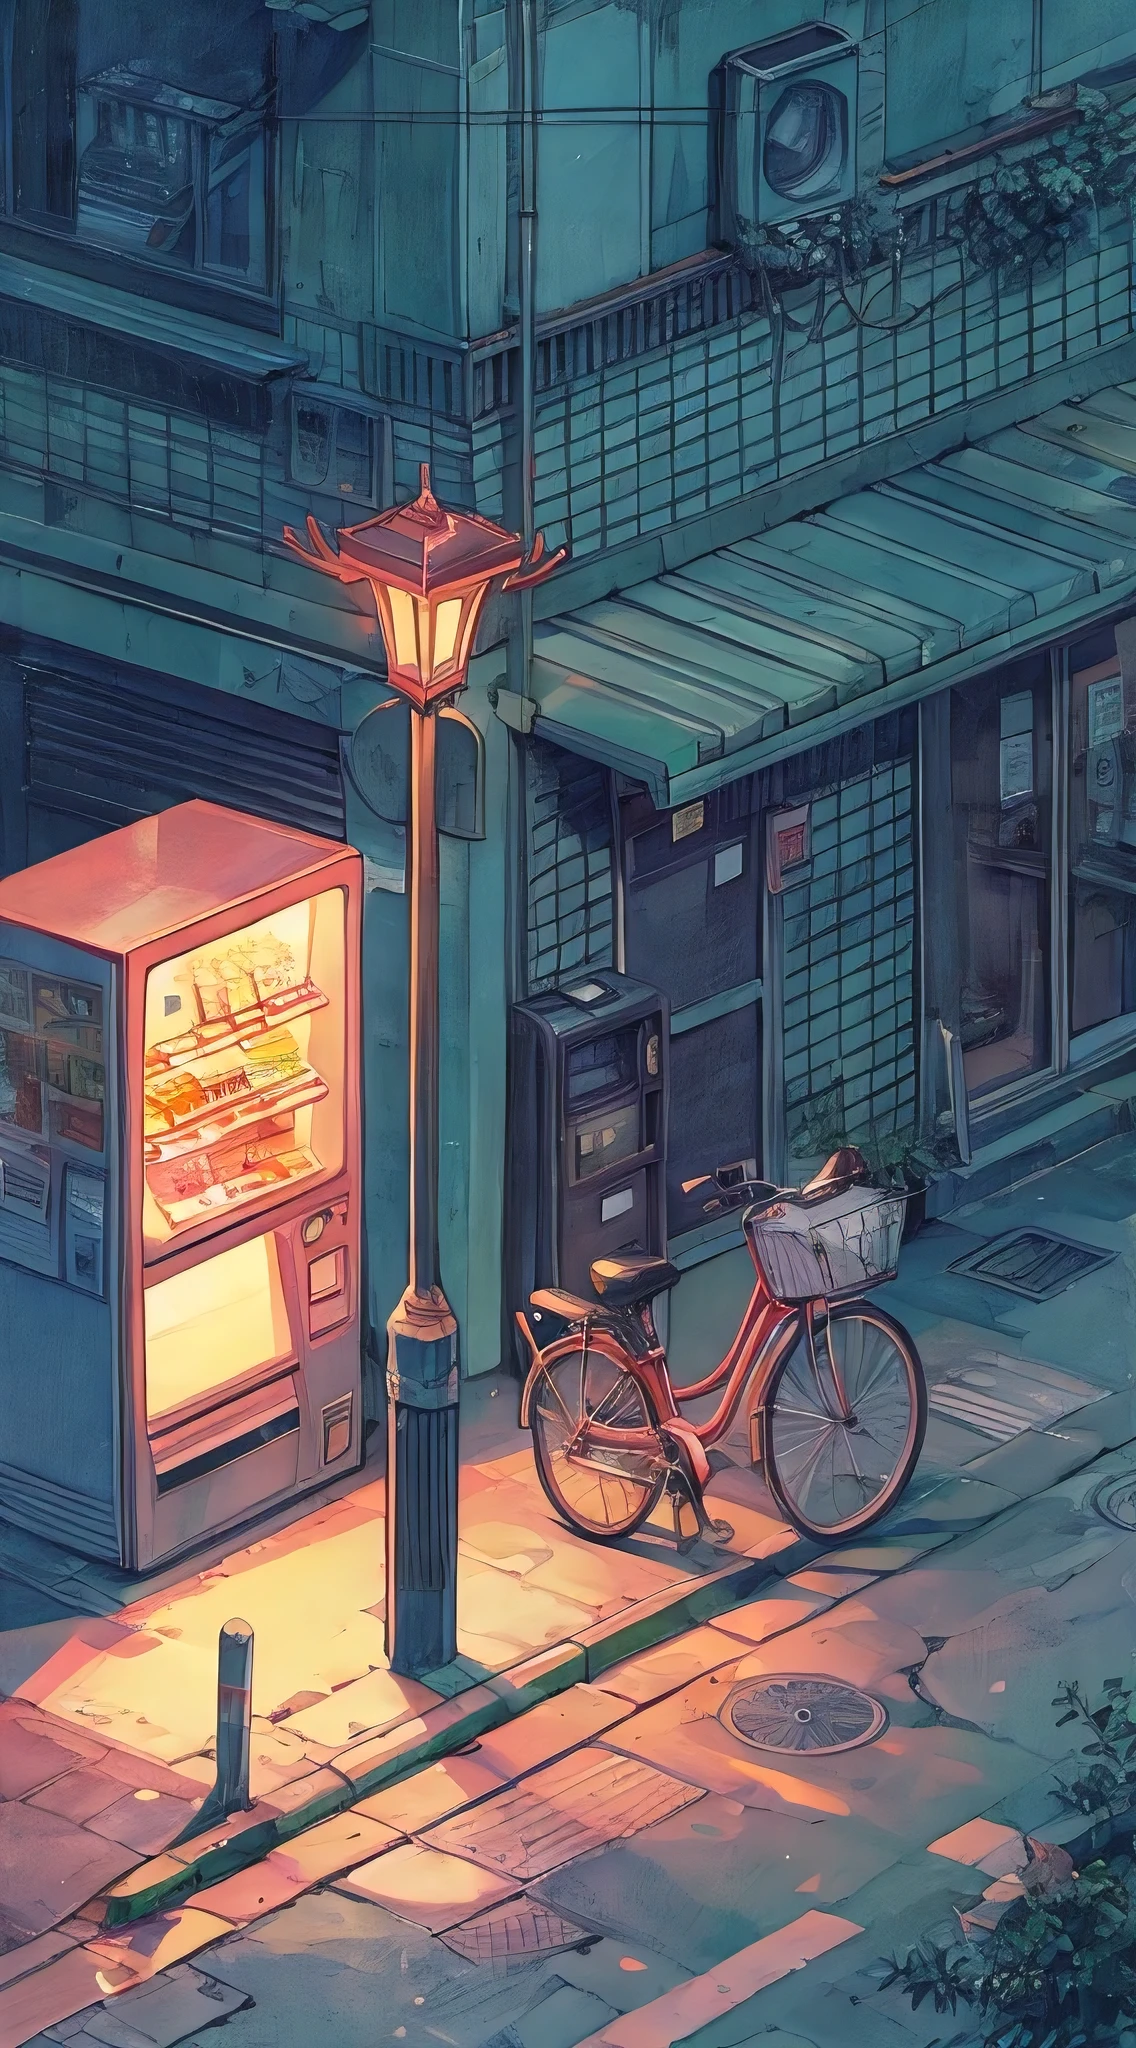 (Лучшее качество, шедевр:1.2), Лоу-фай изометрическая иллюстрация угловой улицы, уличный фонарь, торговый автомат, припаркованный велосипед